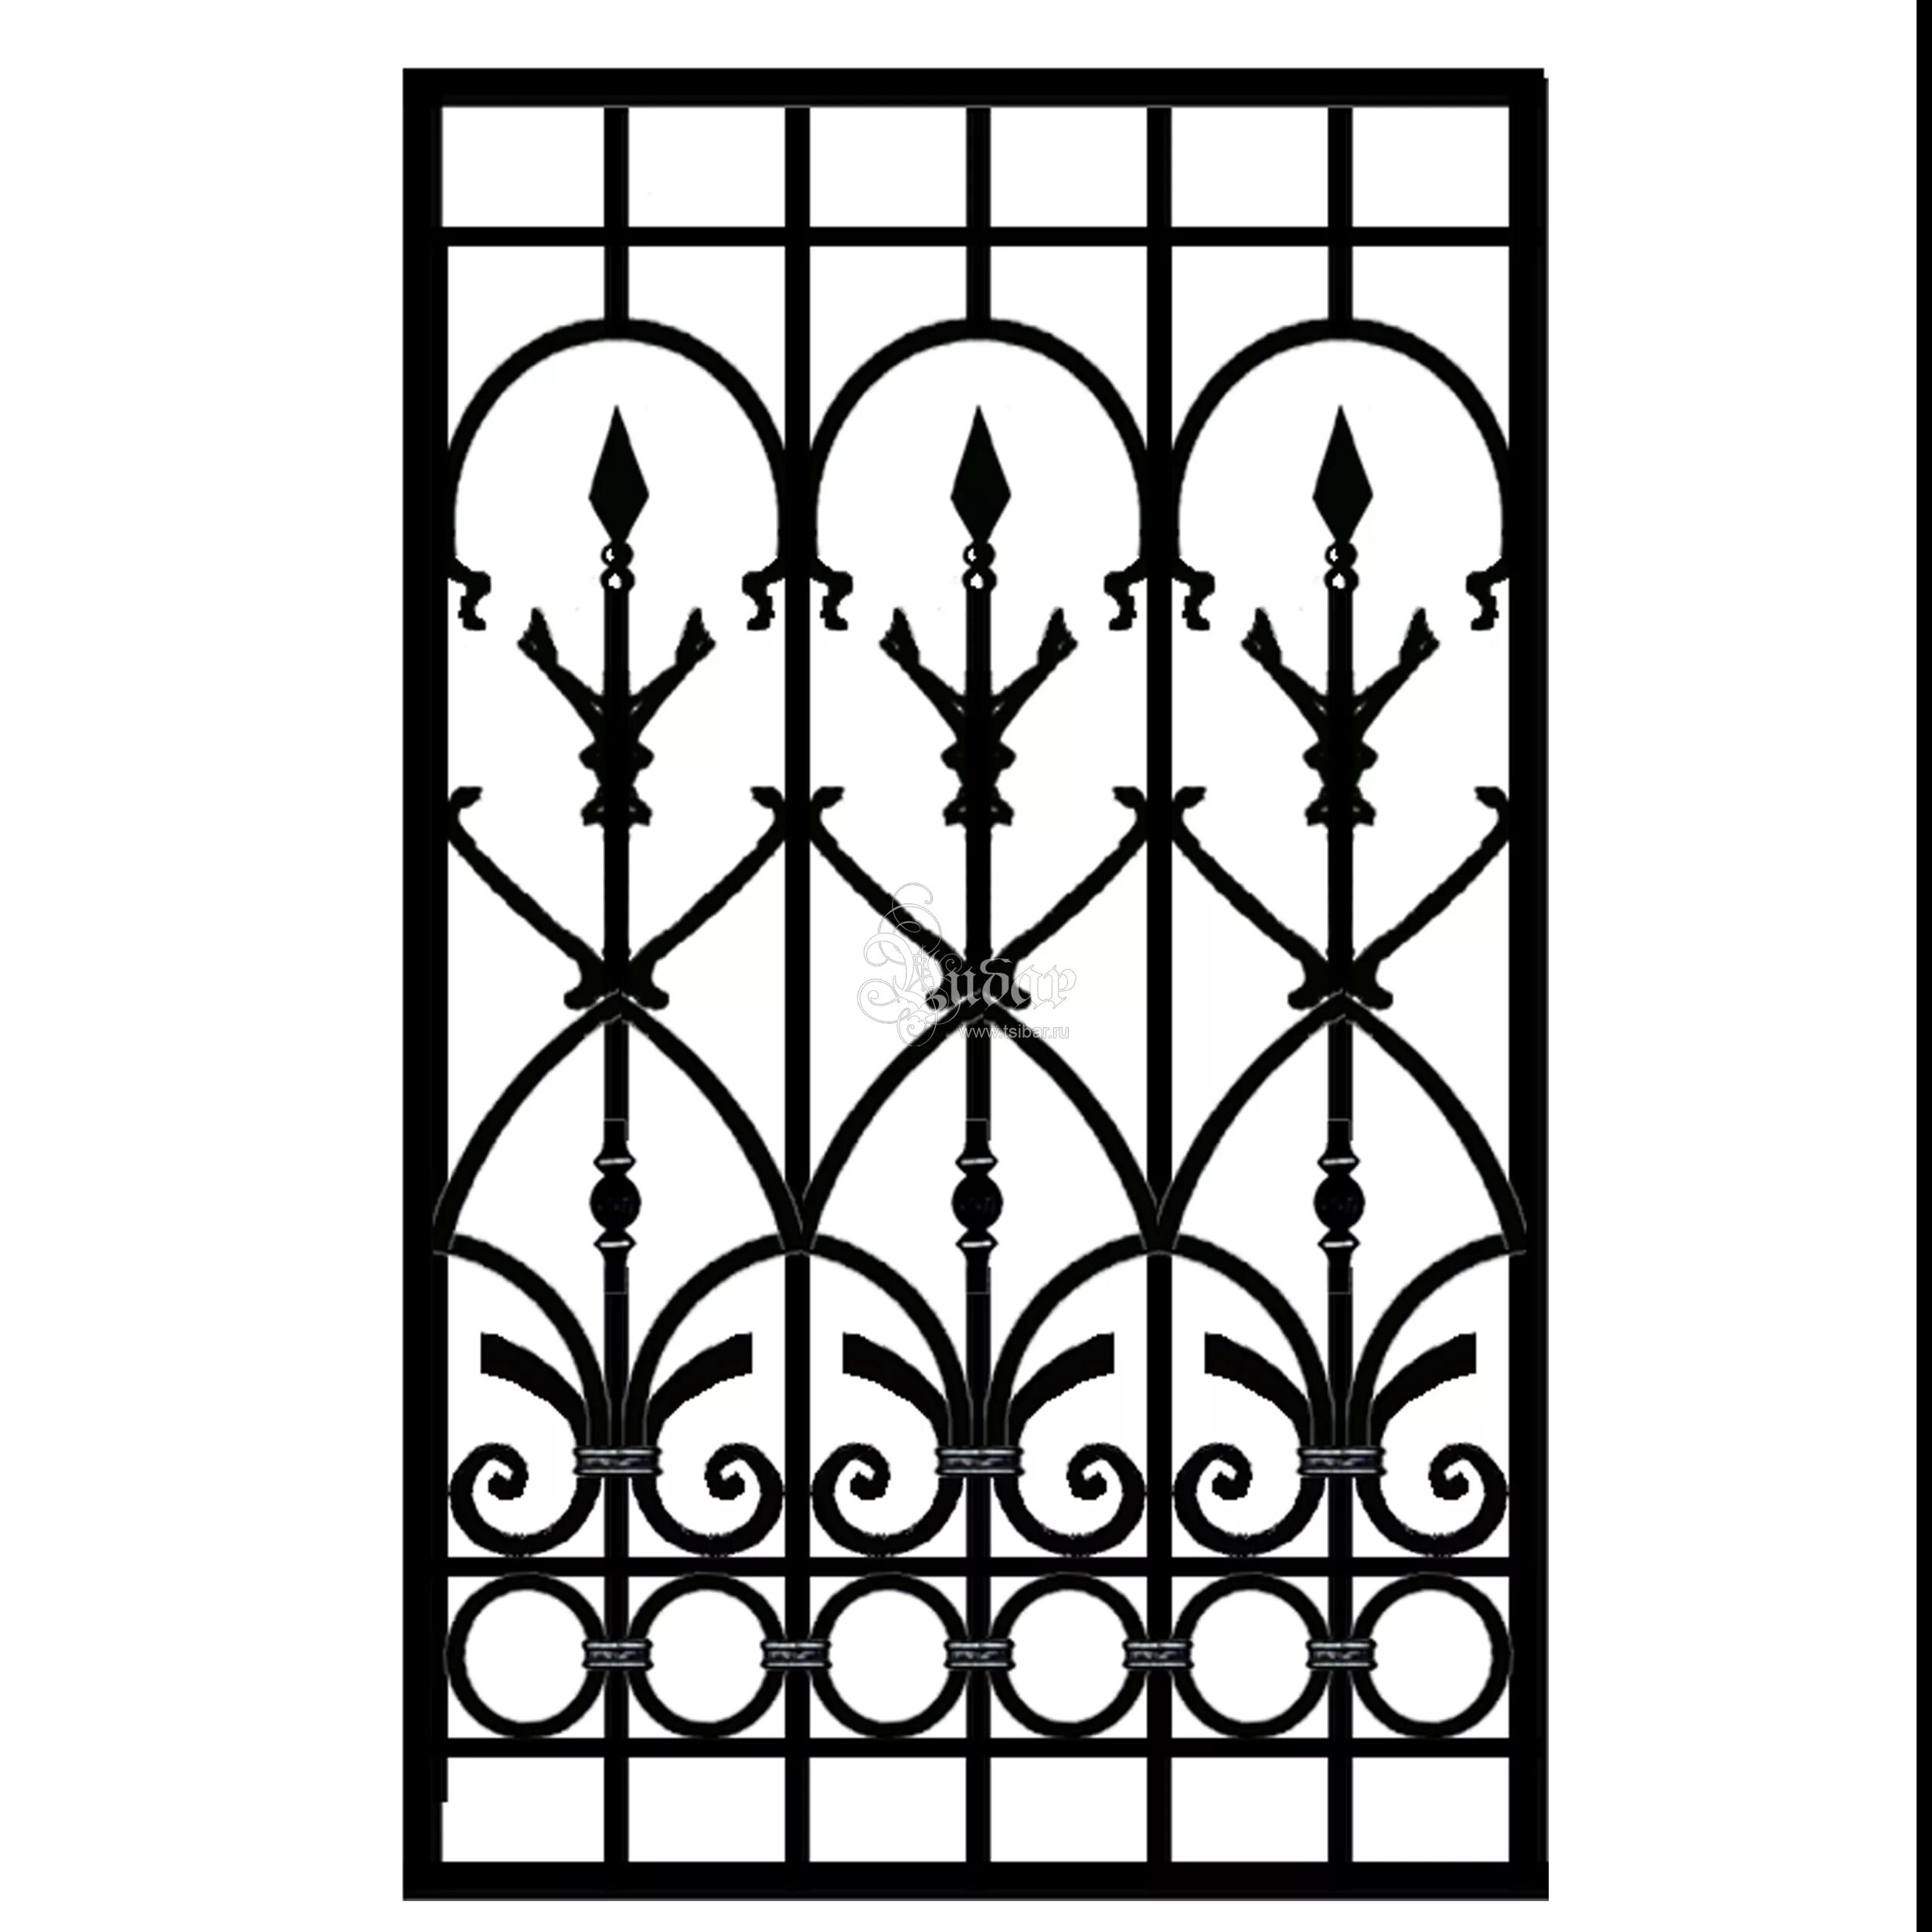 Ажурные решетки из металла. Кованые решетки на окна в готическом стиле. Оконная решетка Готическая. Резные решетки на окна.